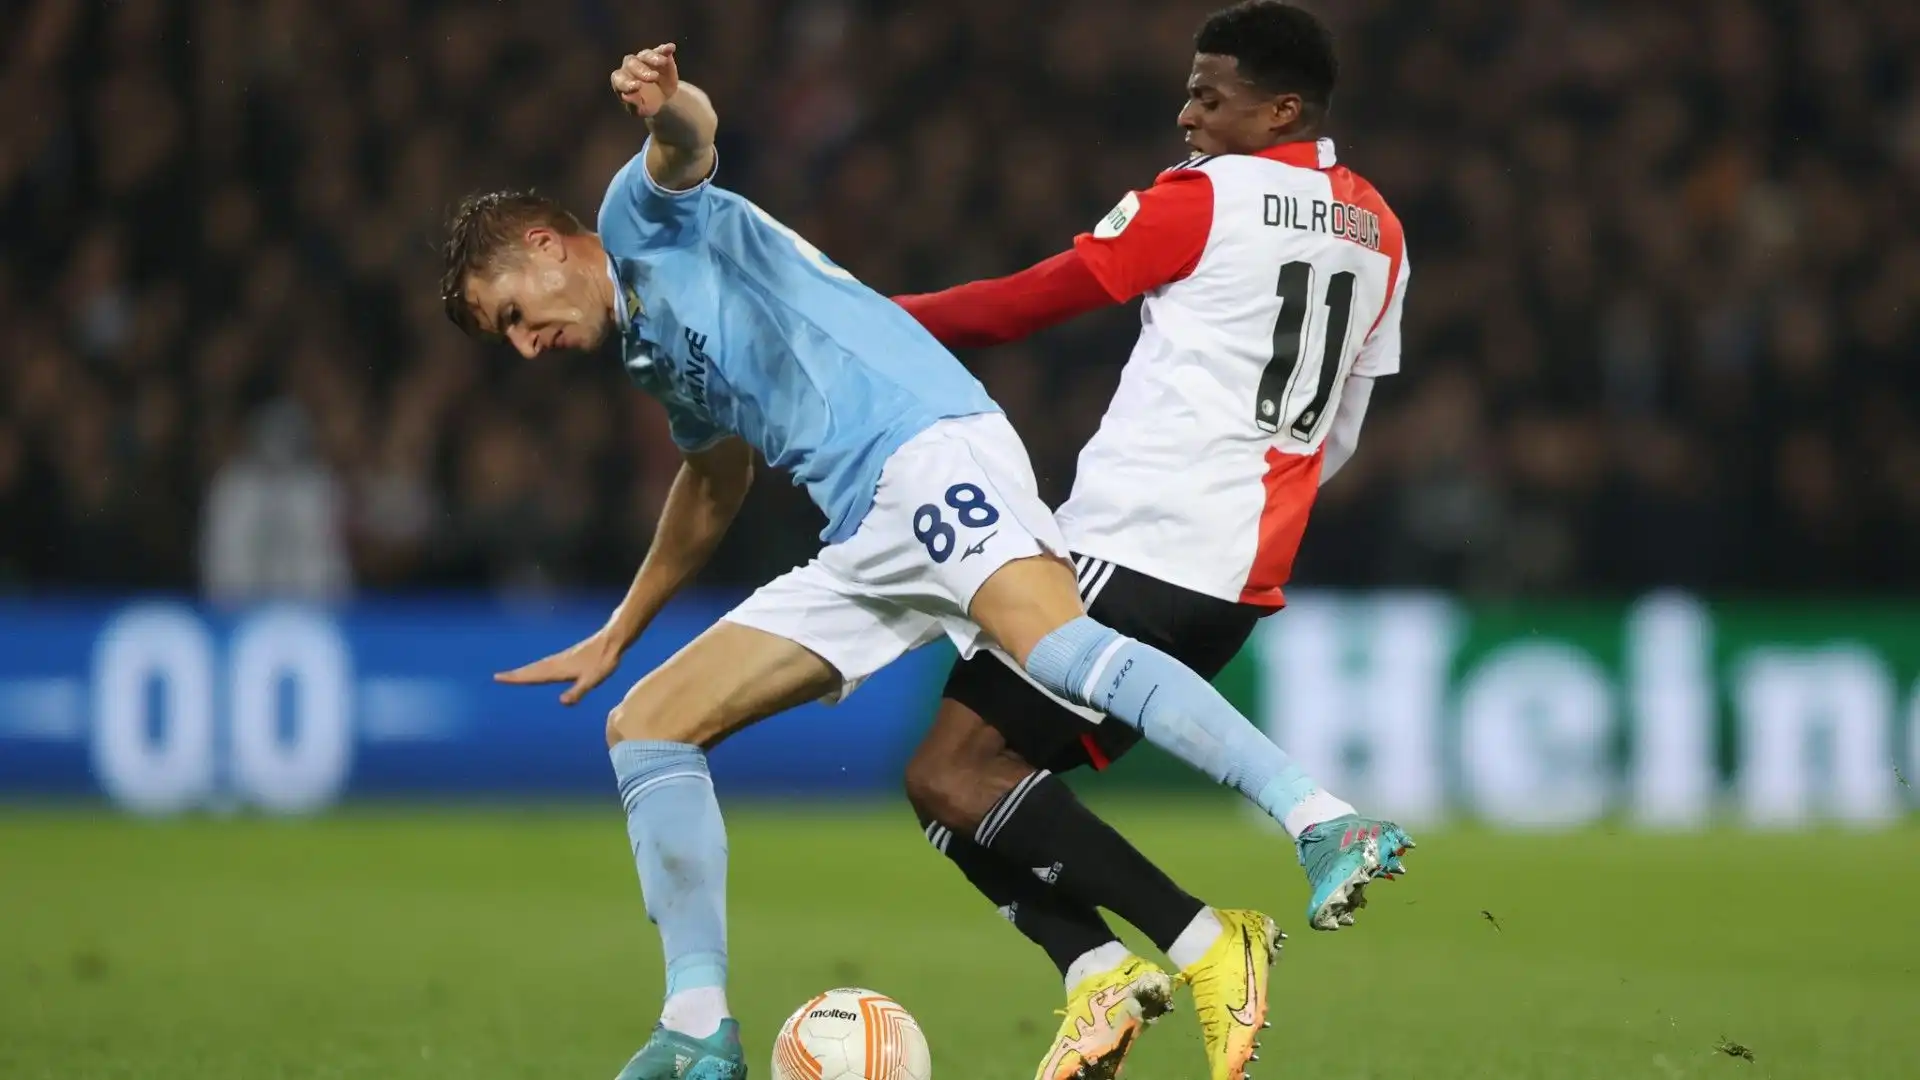 Javairô Dilrosun potrebbe lasciare presto il Feyenoord